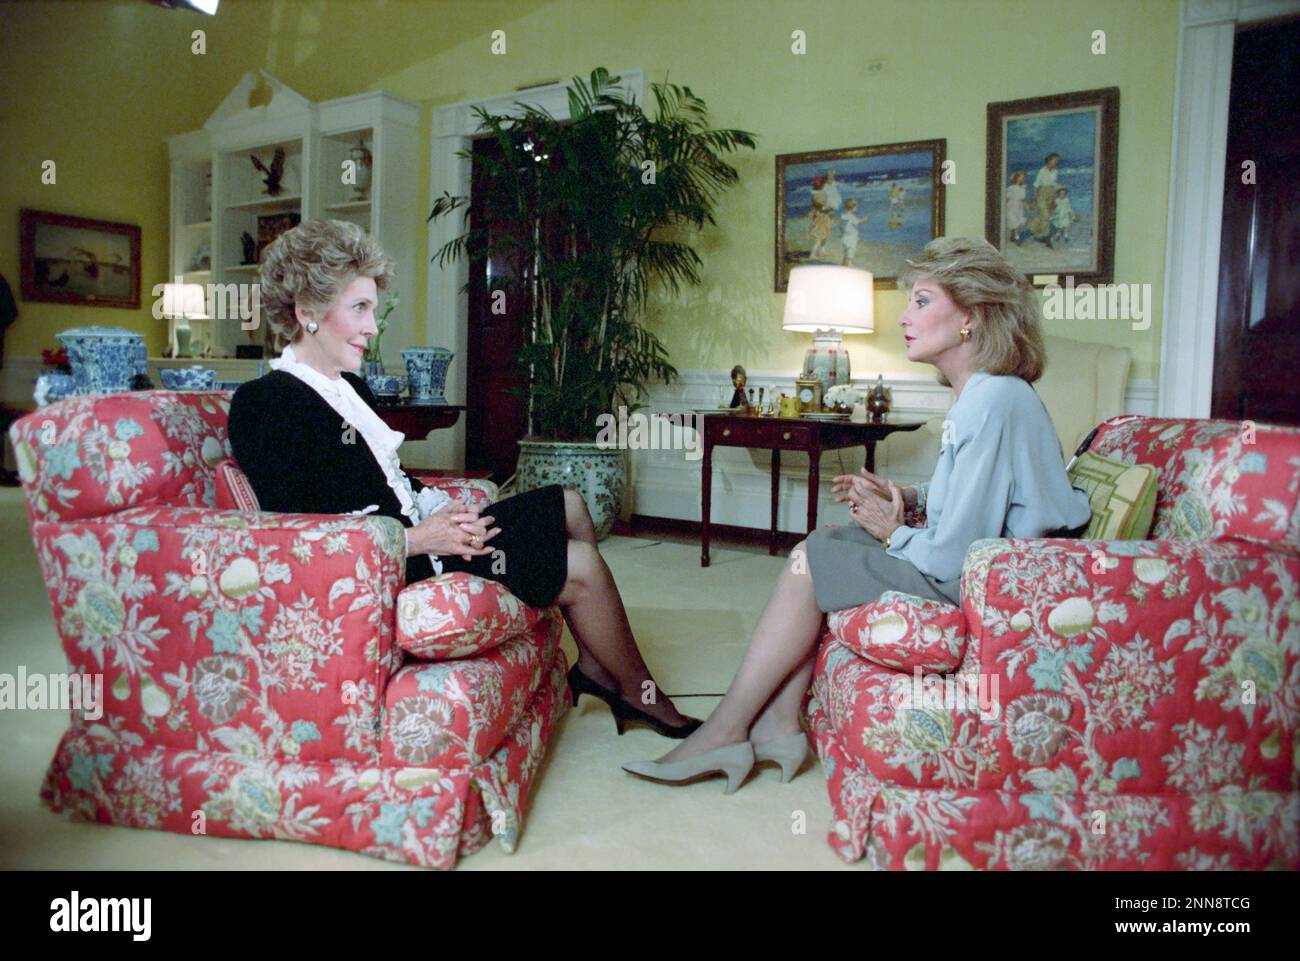 Première dame Nancy Reagan (assise à gauche) interviewée par la journaliste de télévision Barbara Walters dans la résidence de la Maison Blanche, Washington, DC, 2/3/1988. (Photo du Bureau de presse de la Maison Blanche Banque D'Images